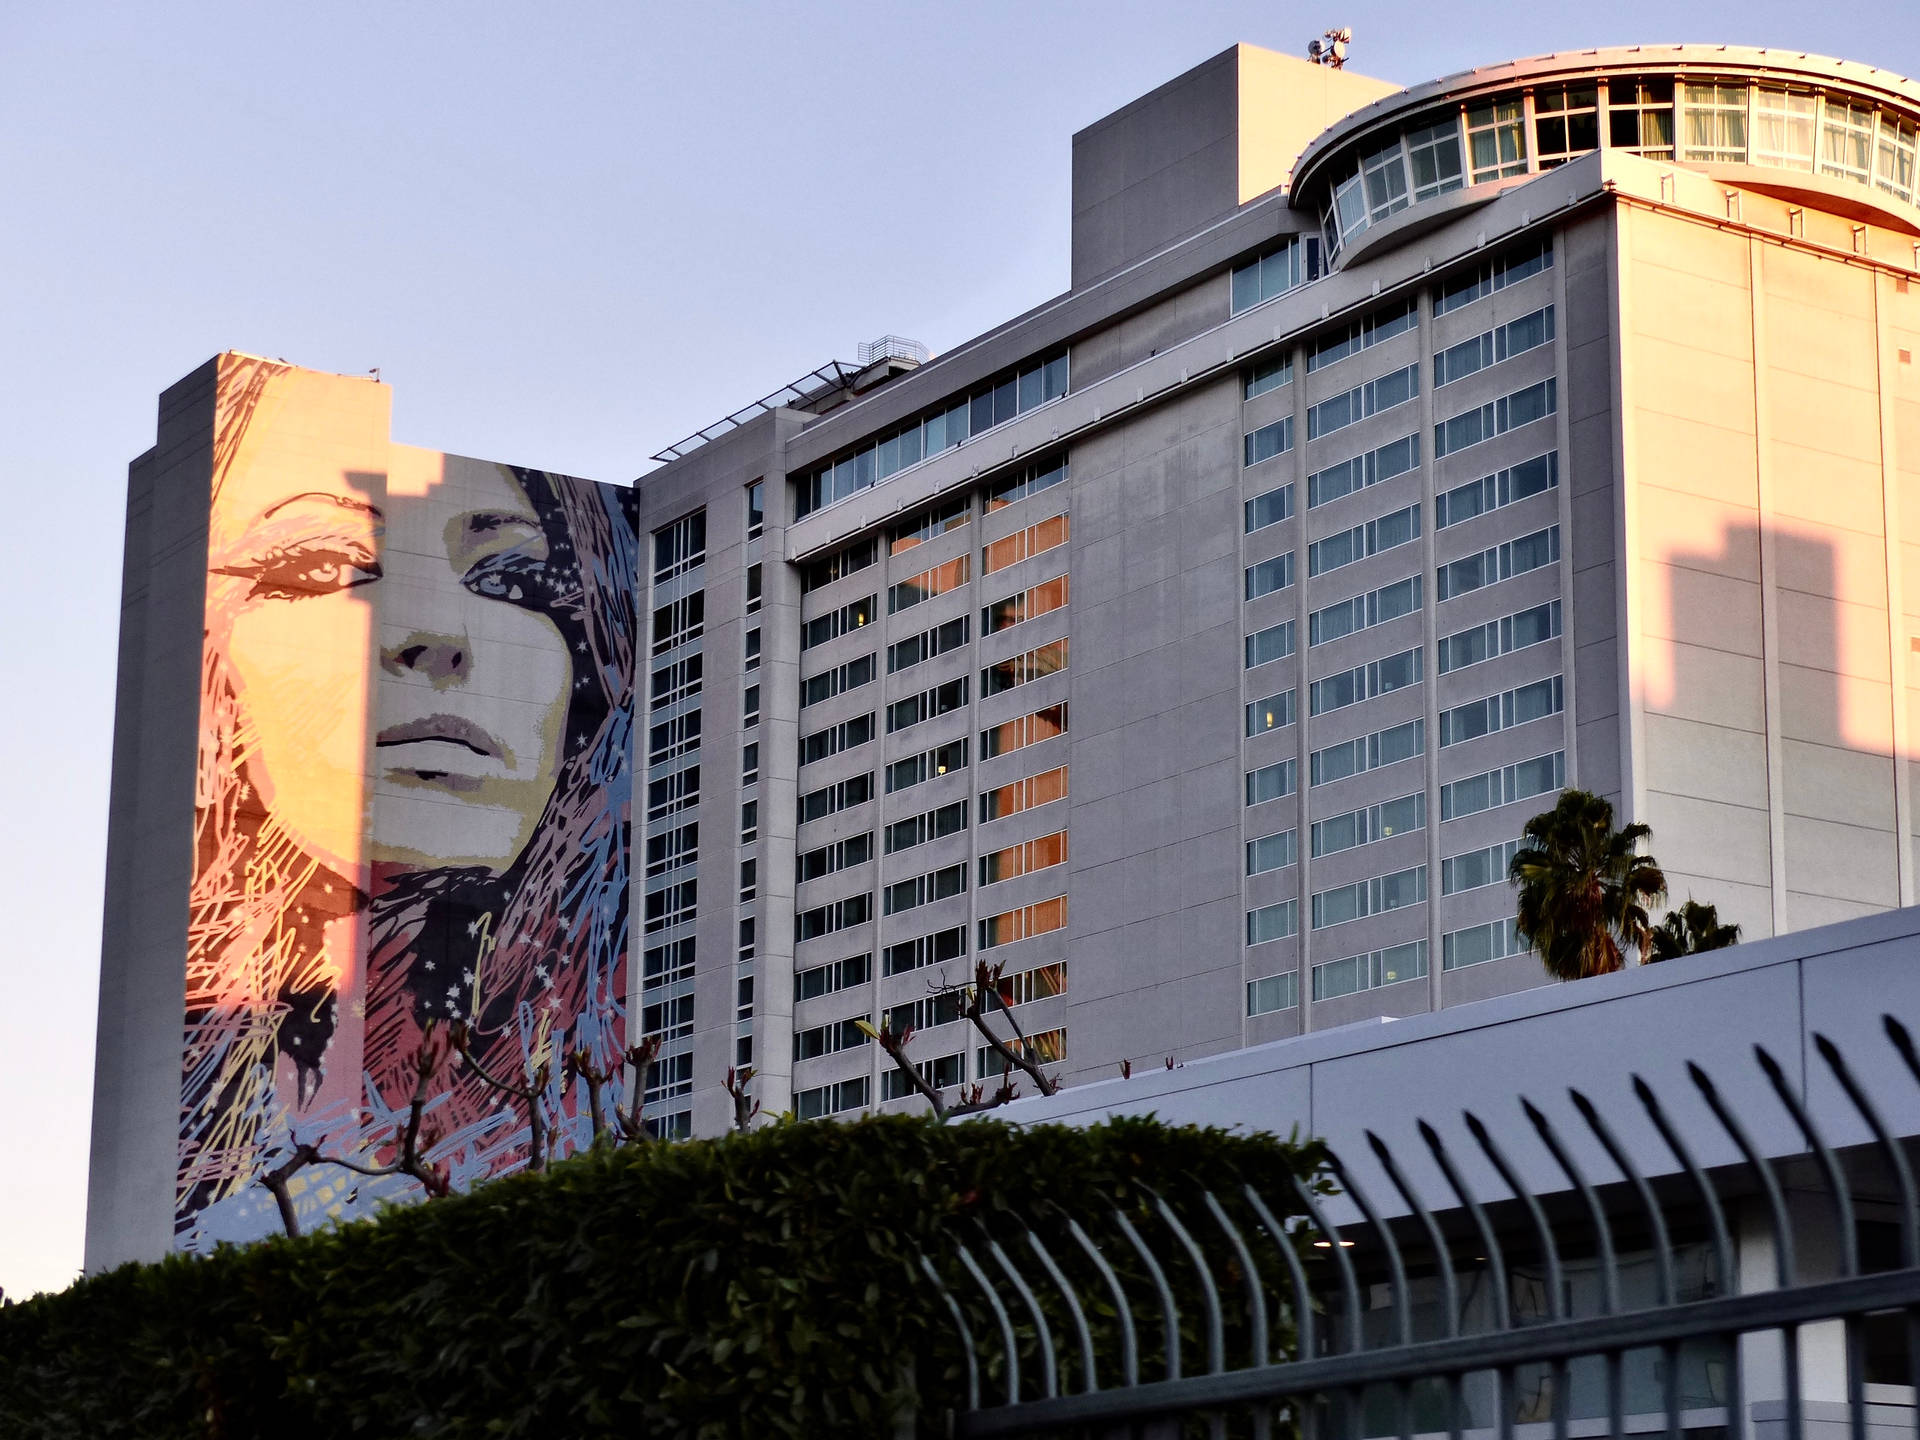 Hollywoodgatanbyggnadsmålning Wallpaper